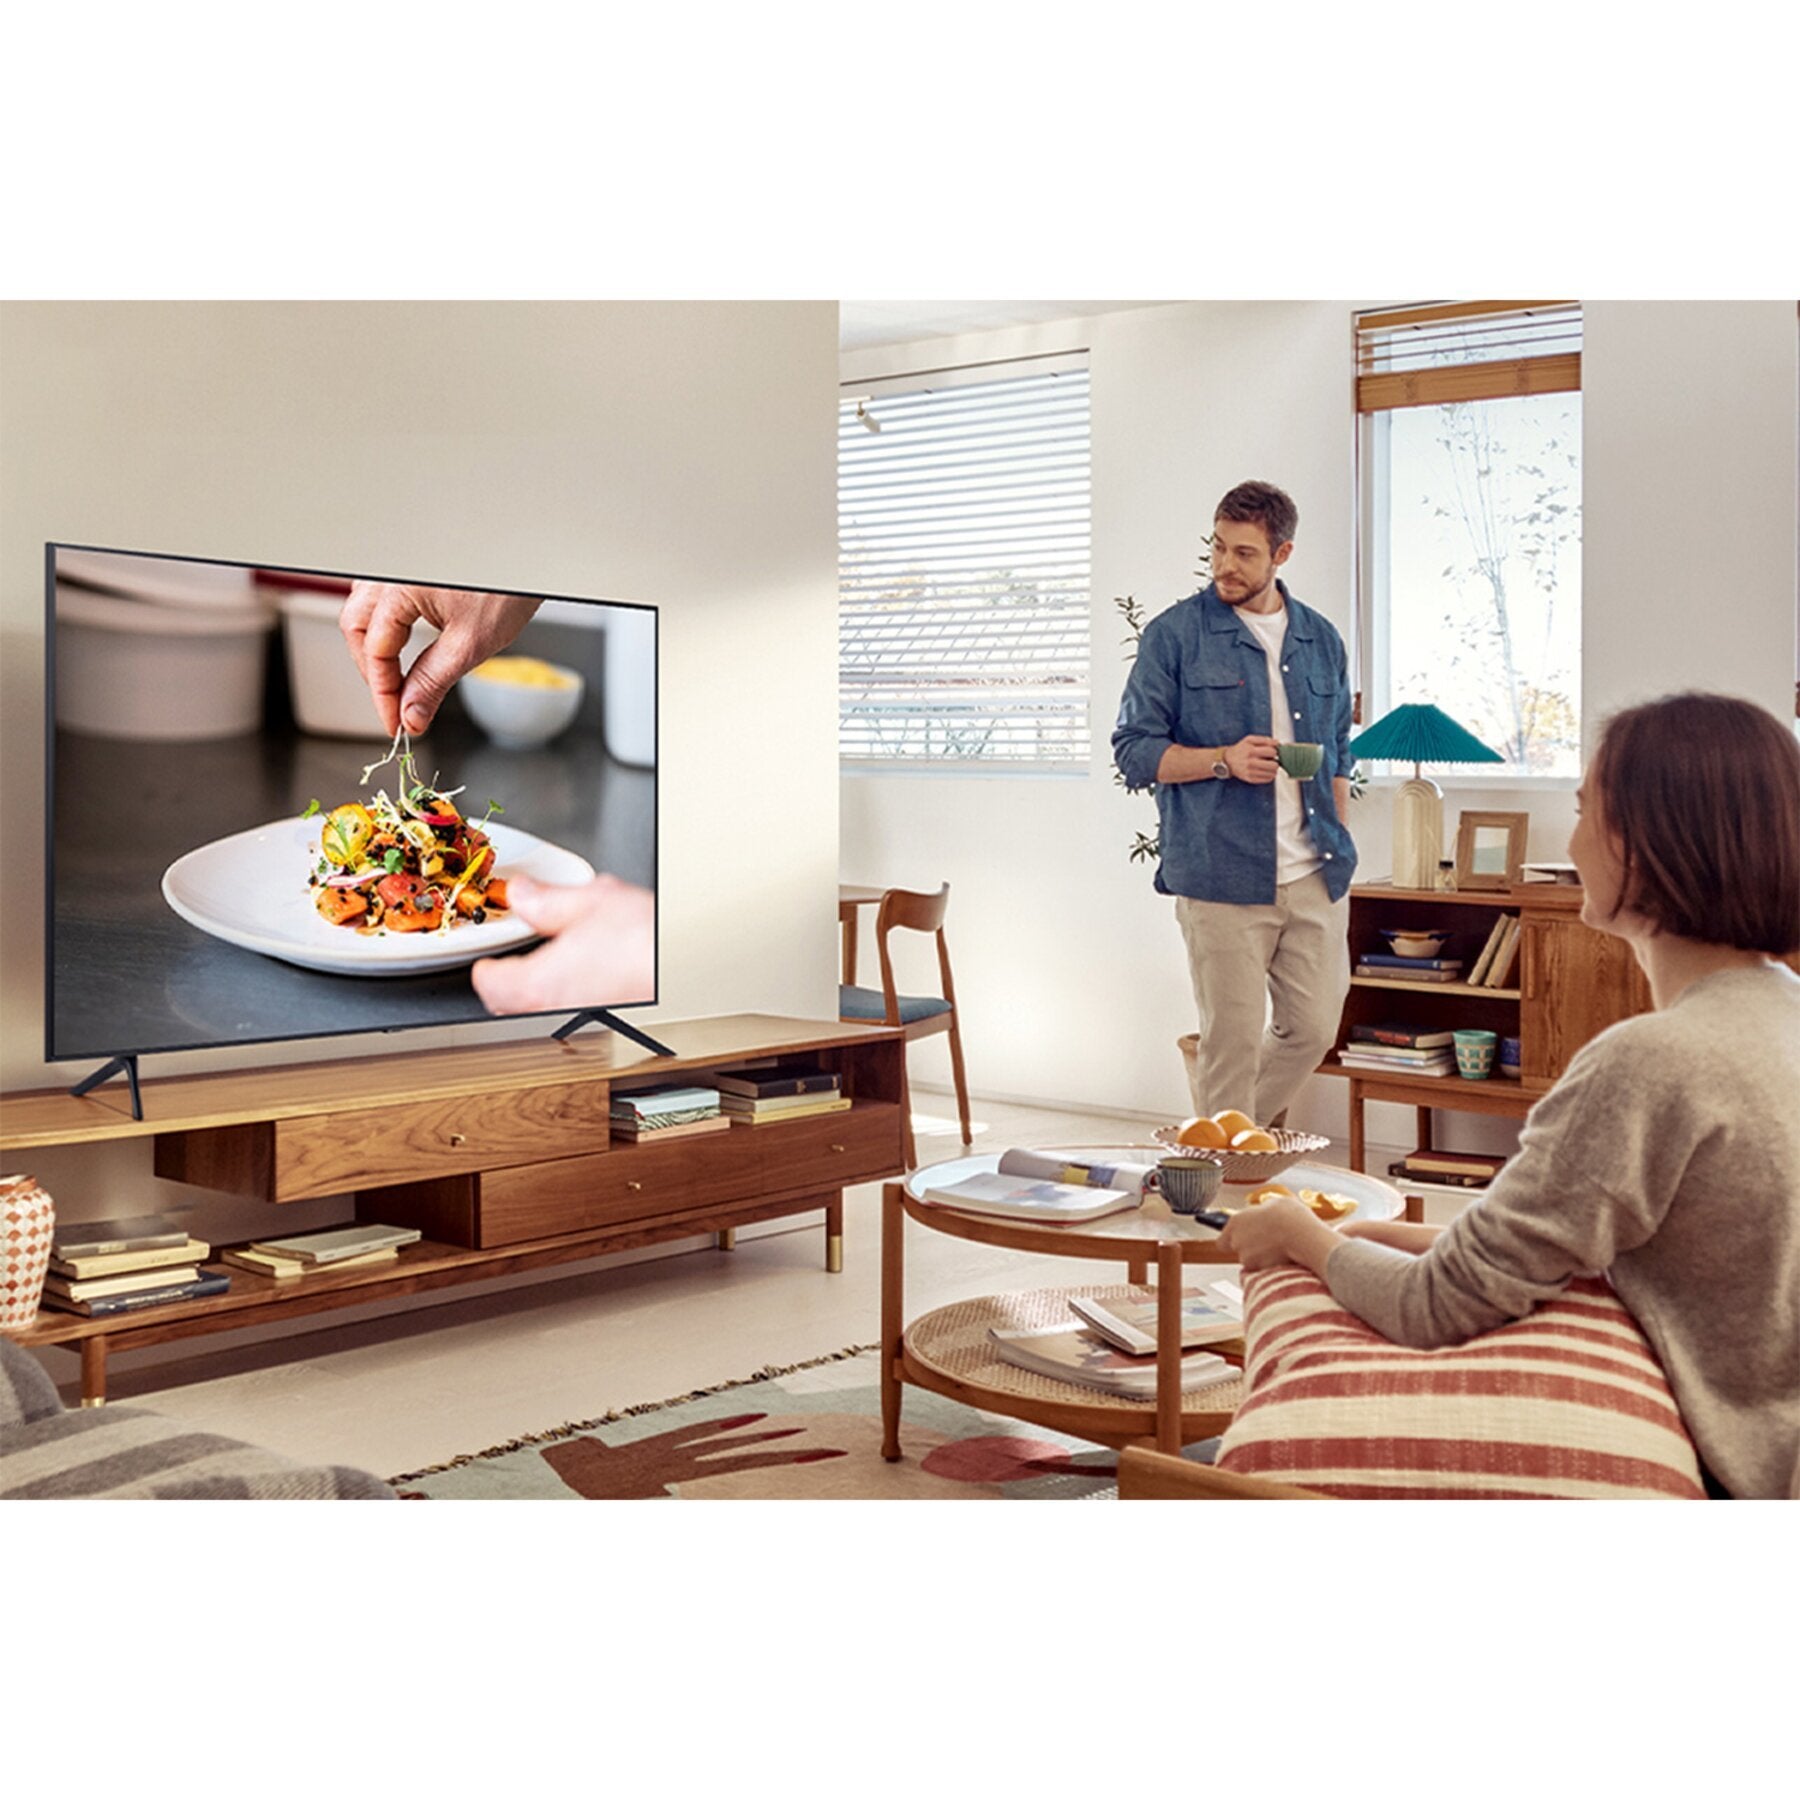 Samsung TV Led Crystal UHD 4K UE43AU7170 Smart TV WIFI 